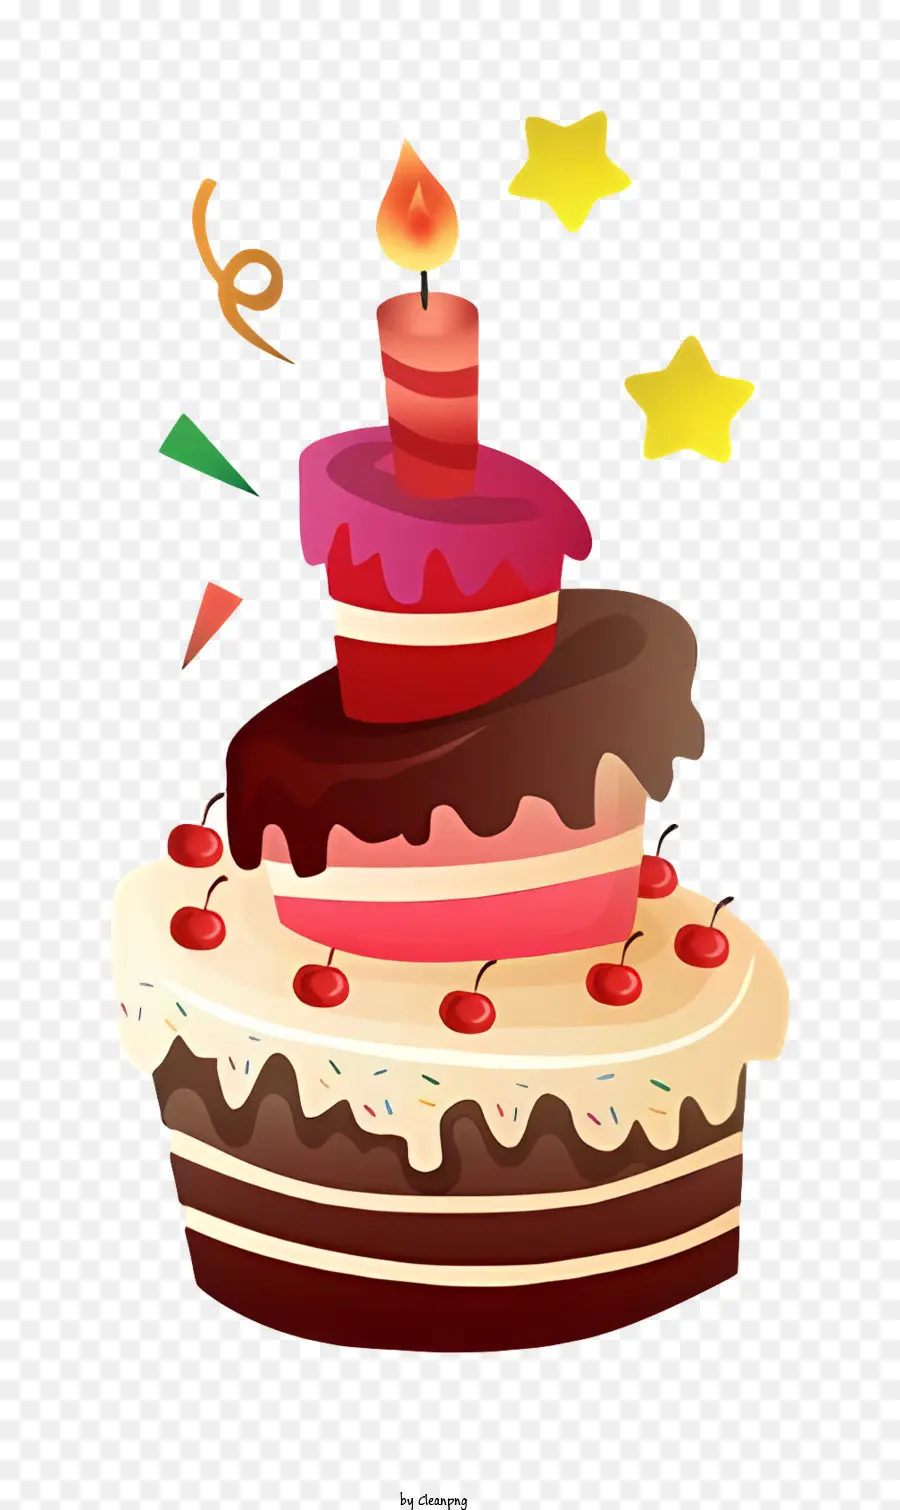 Torta di compleanno - Torta di compleanno stilizzata con candele accesi e decorazioni